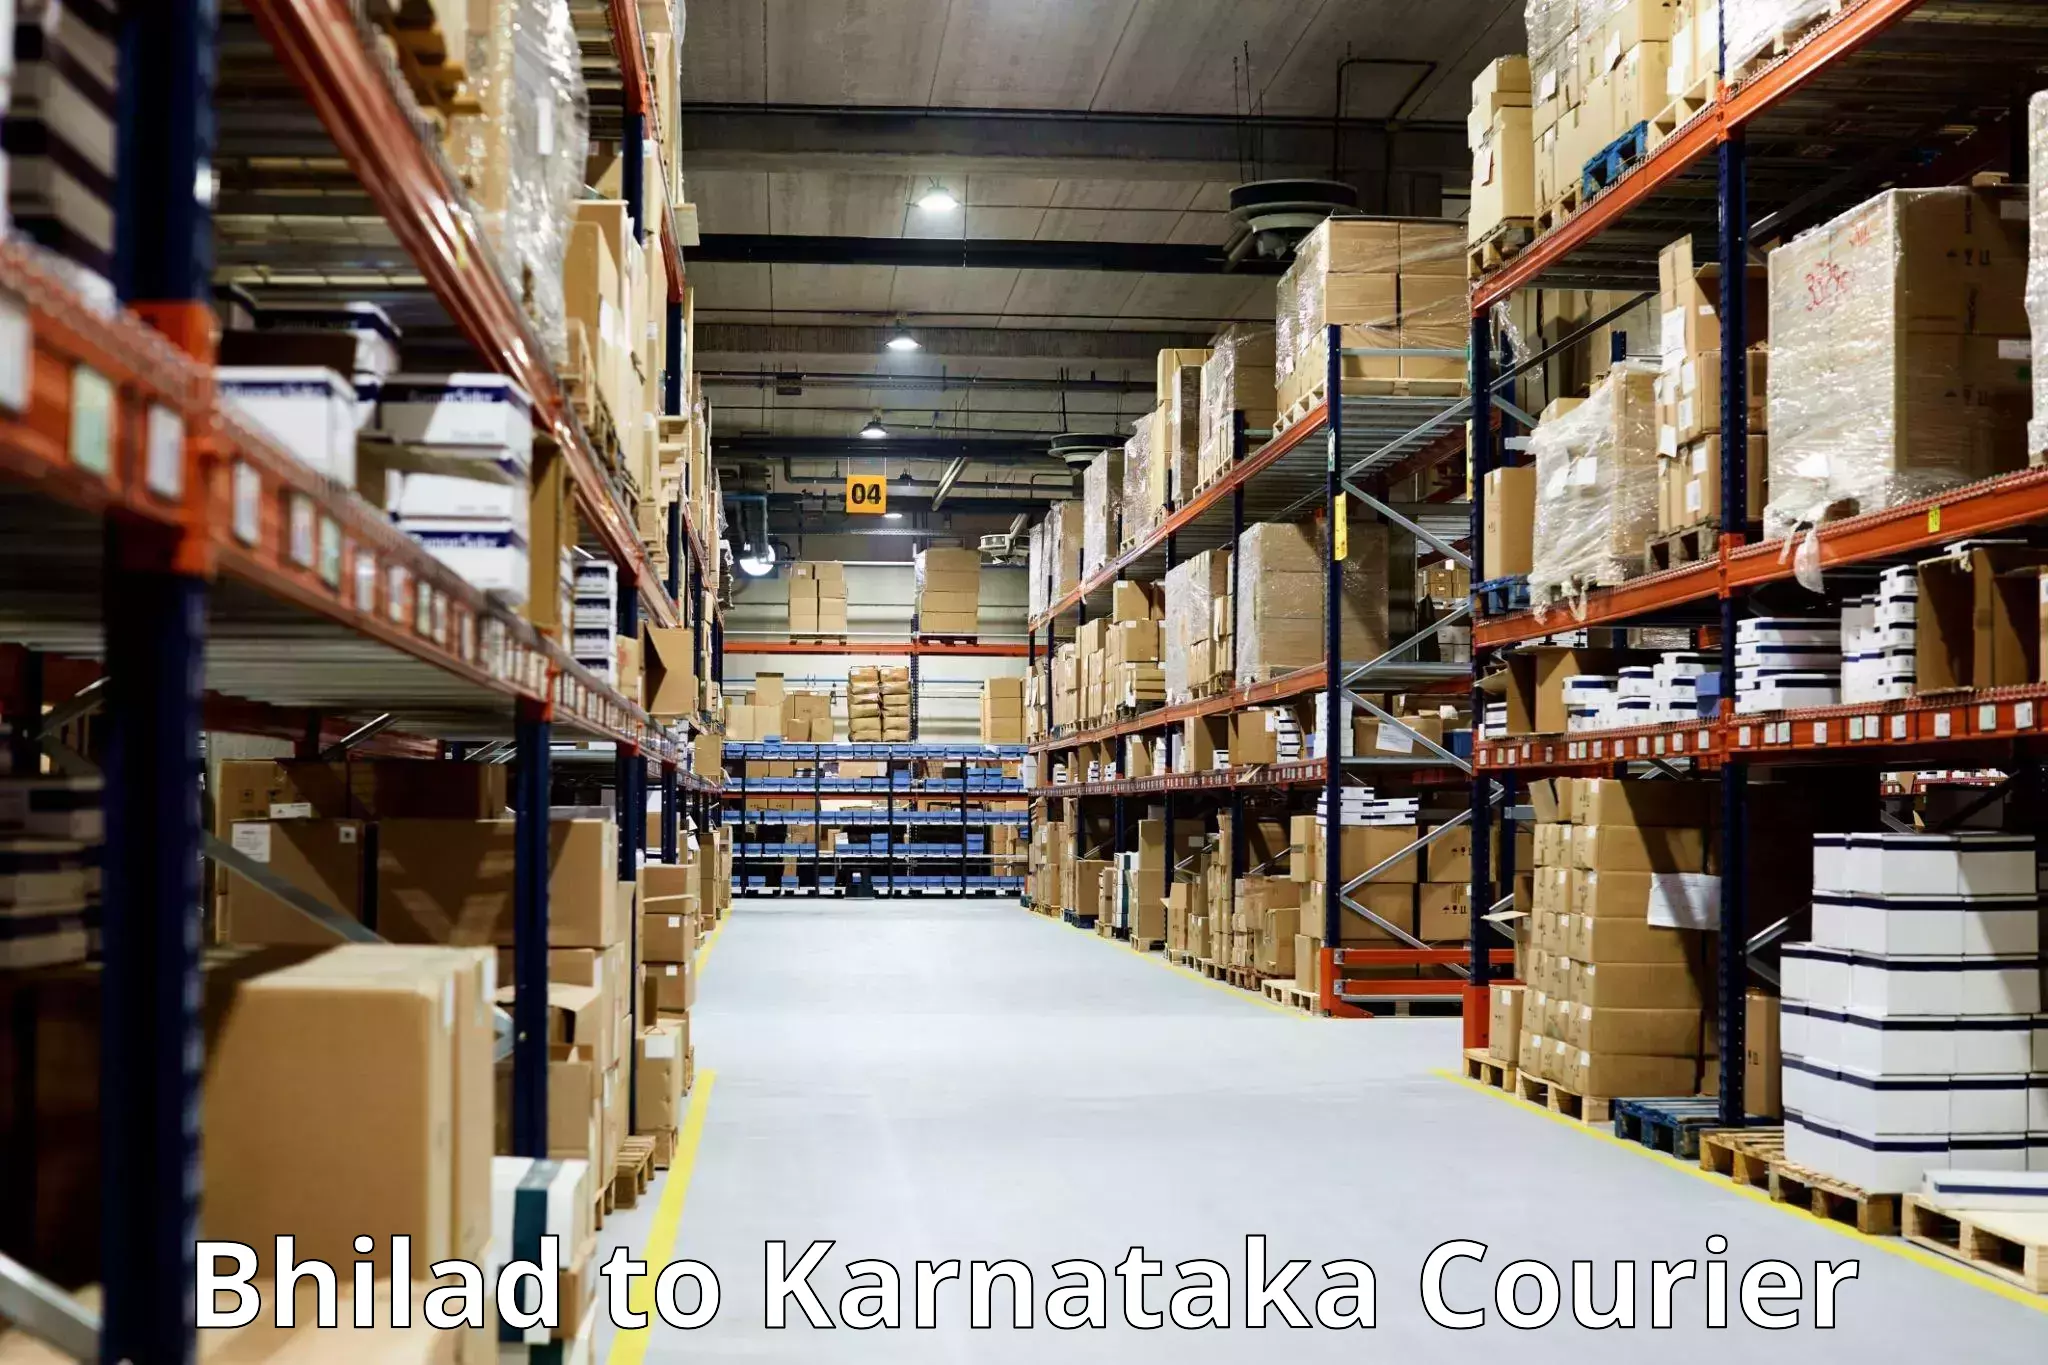 Luggage transport company Bhilad to Kanjarakatte